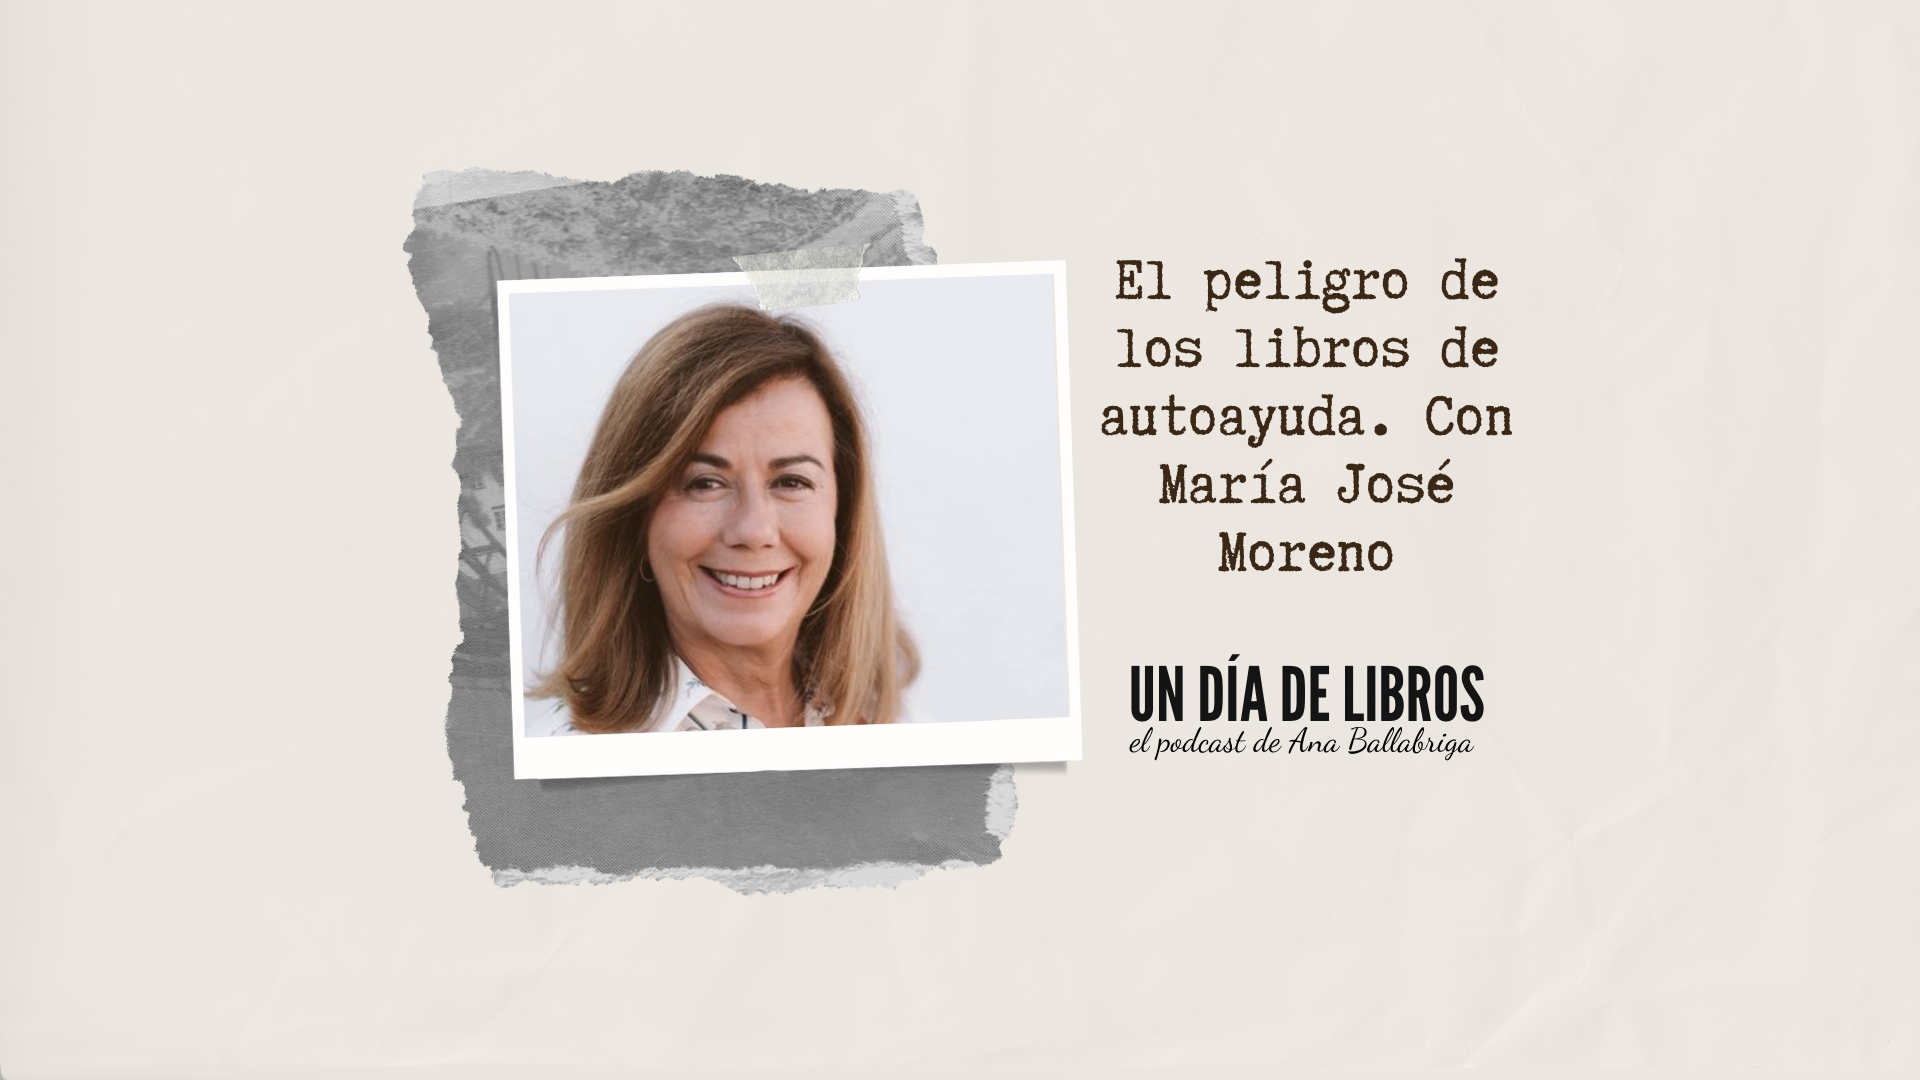 El peligro de los libros de autoayuda, con María José Moreno